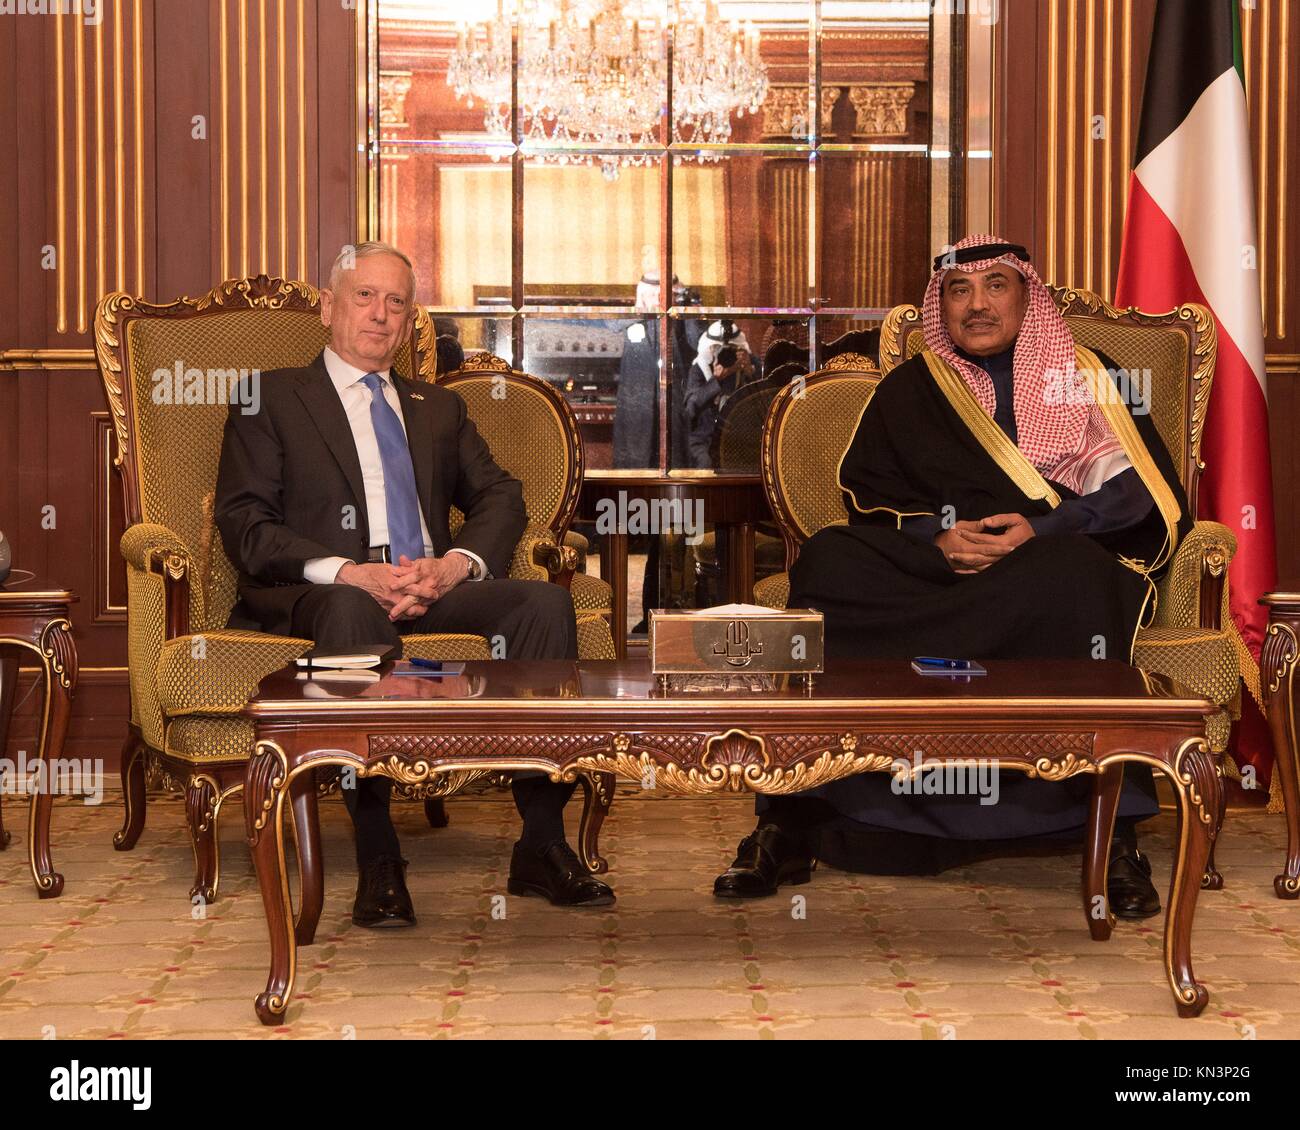 El secretario de defensa estadounidense James Mattis (izquierda) se reúne con el ministro de asuntos exteriores kuwaití Khalid Al Sabah Hamad Al Sabah, el 3 de diciembre de 2017 en Kuwait. (Foto por amber smith via planetpix i.) Foto de stock